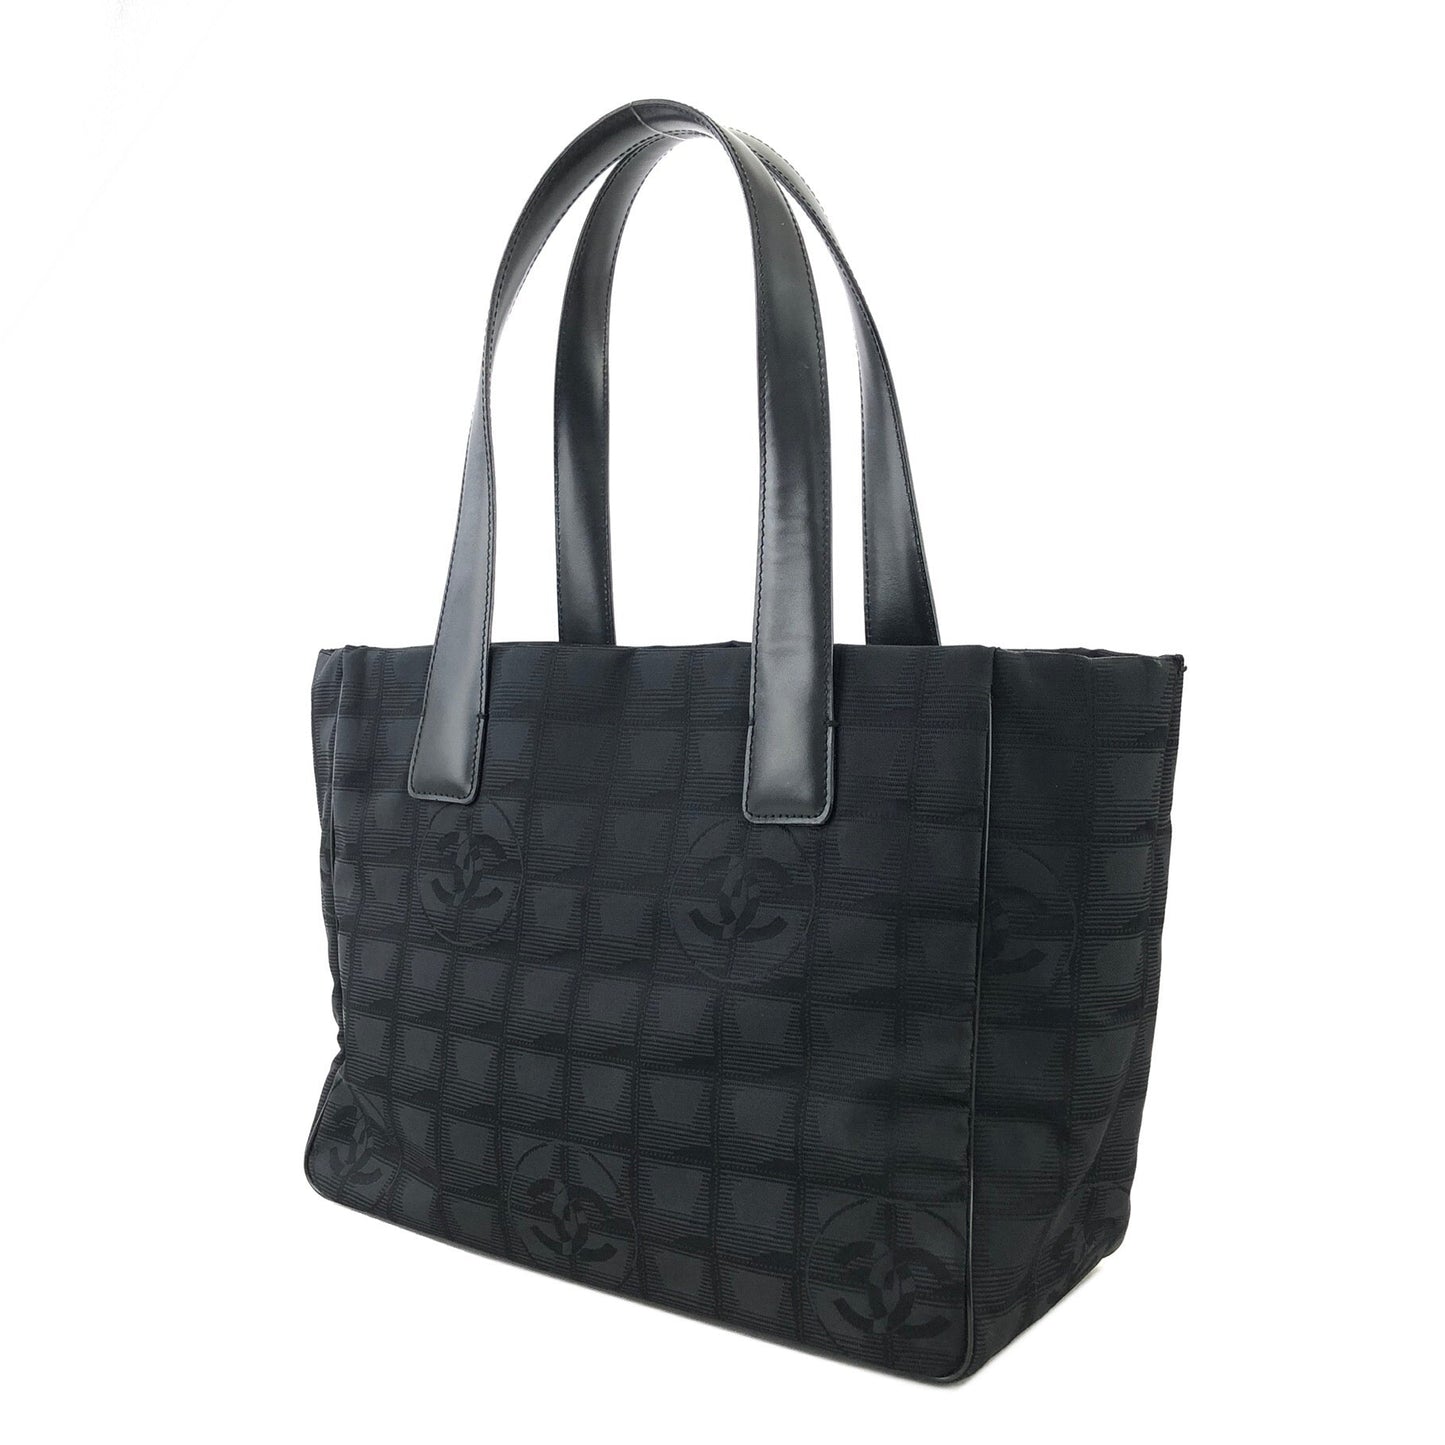 CHANEL New Travel Line PM Nylon Jacquard Handbag Tote Bag Black Old Vintage 8yw4tz